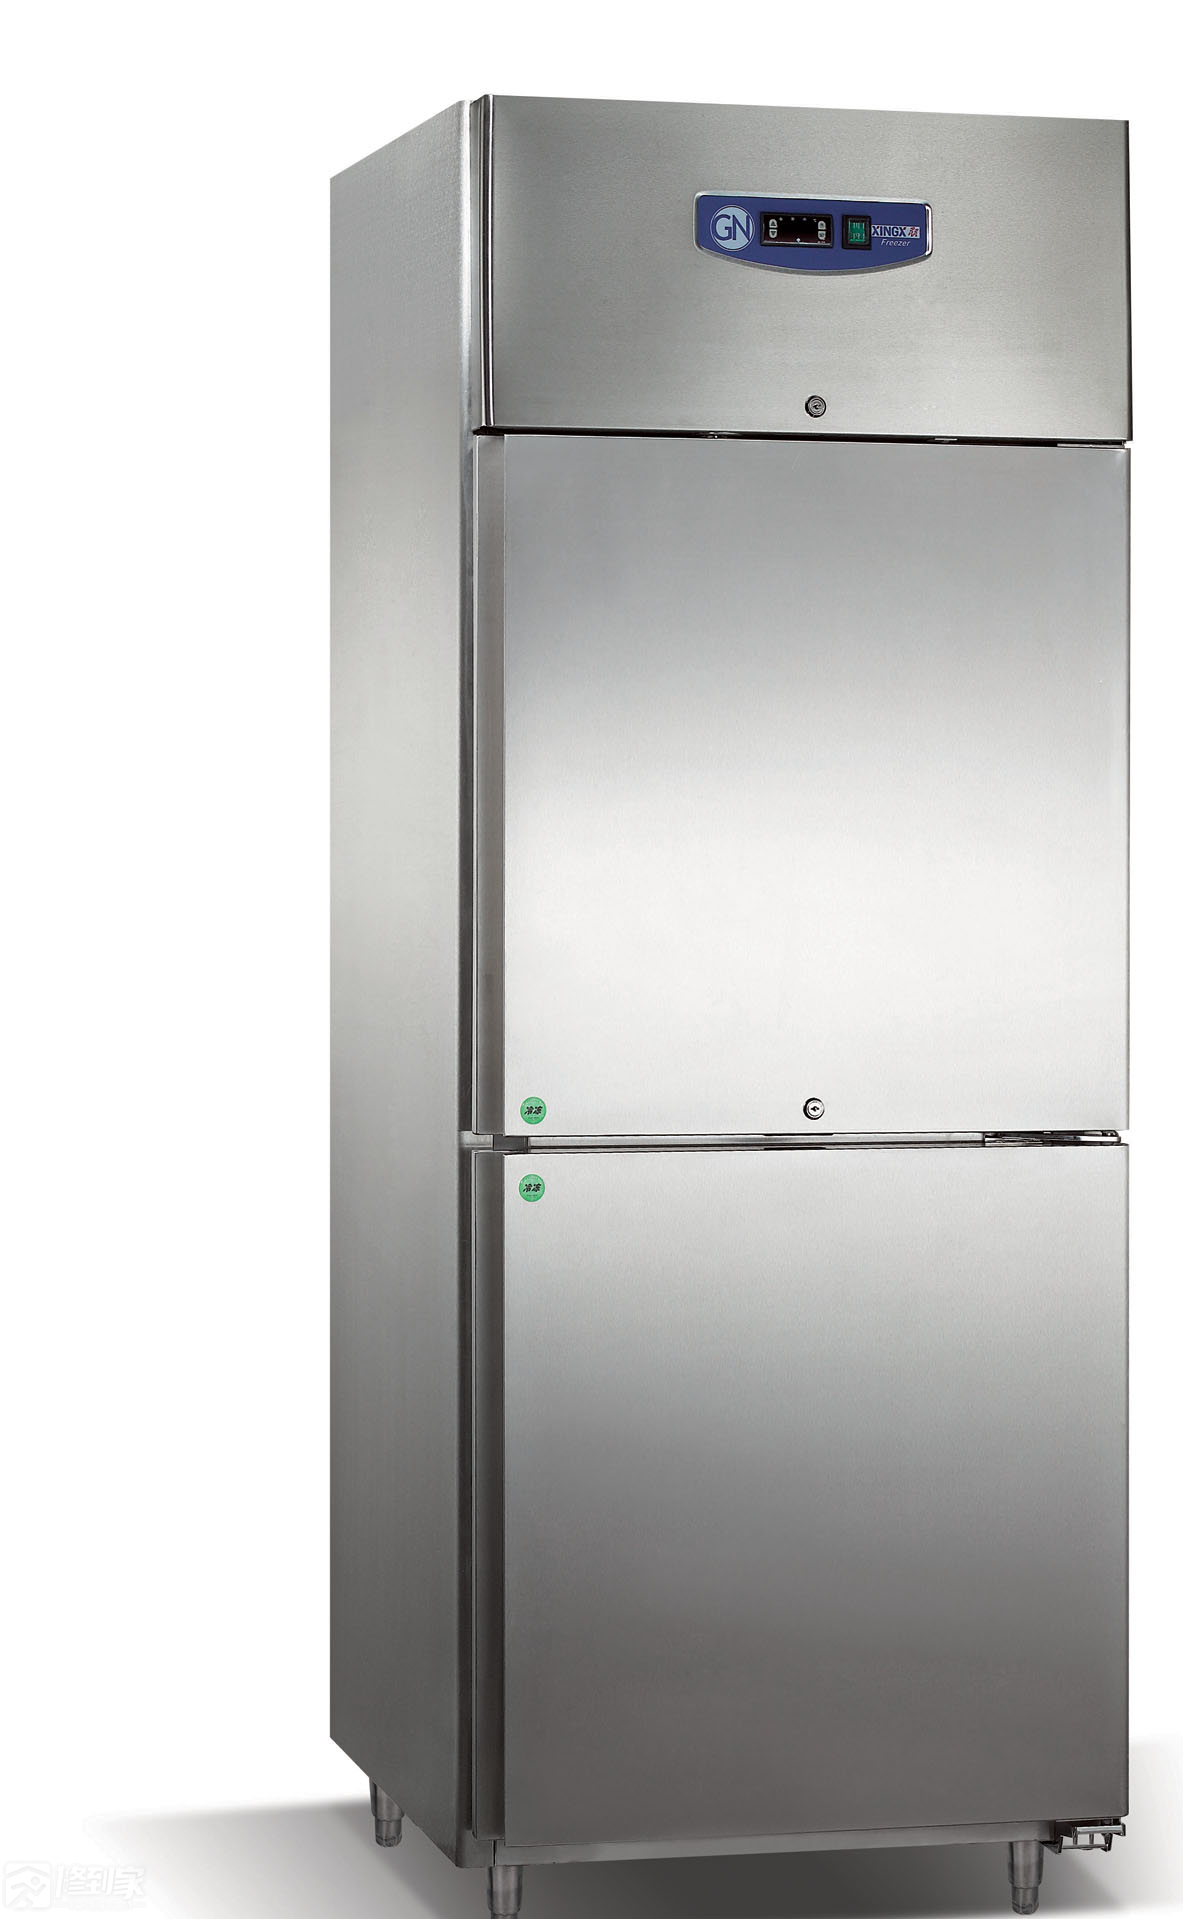 冰柜澳柯玛澳柯玛冰箱显示F2故障如何解决？北京冰箱维修